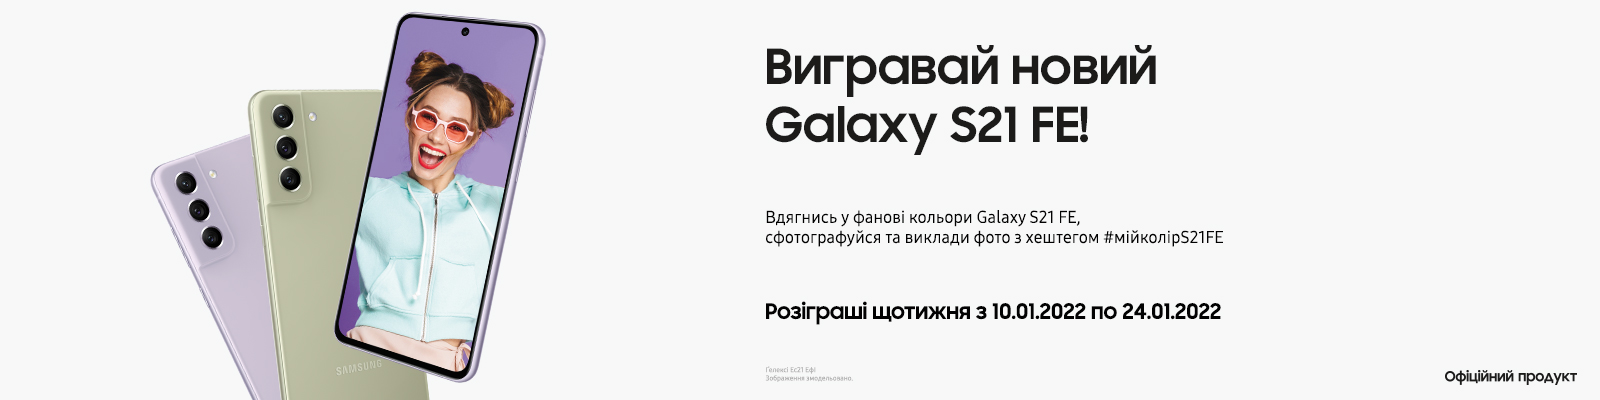 Виграй новий Galaxy S21 FE